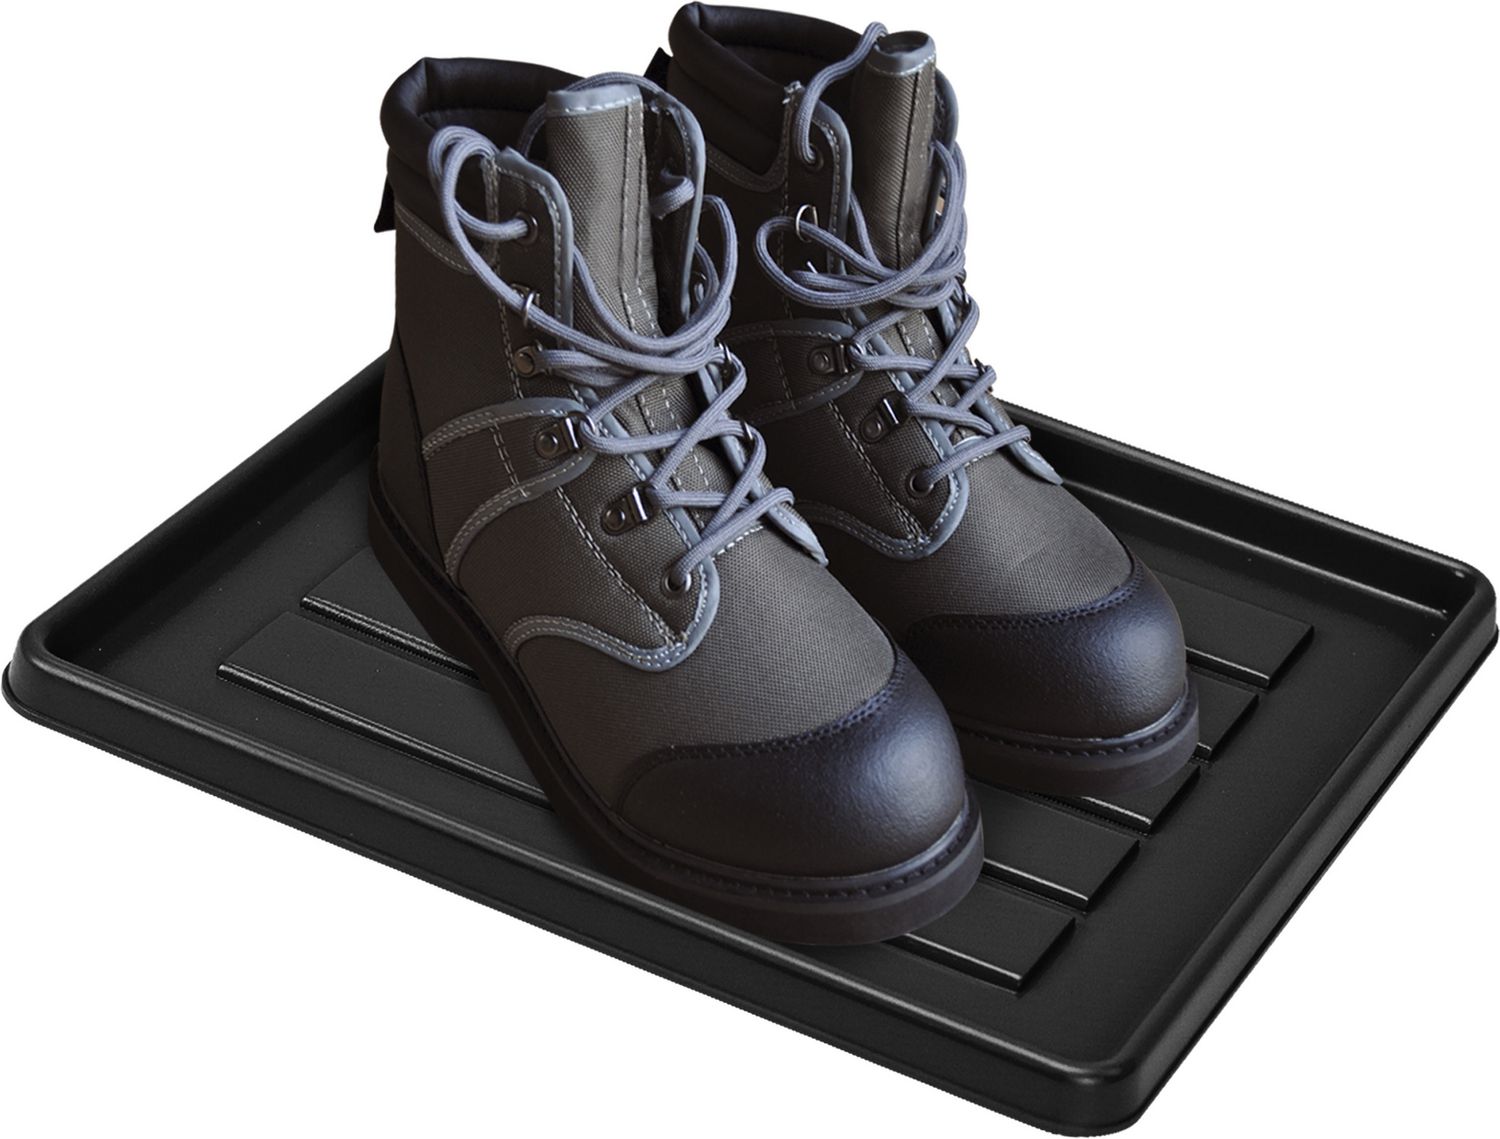 walmart canada boot tray